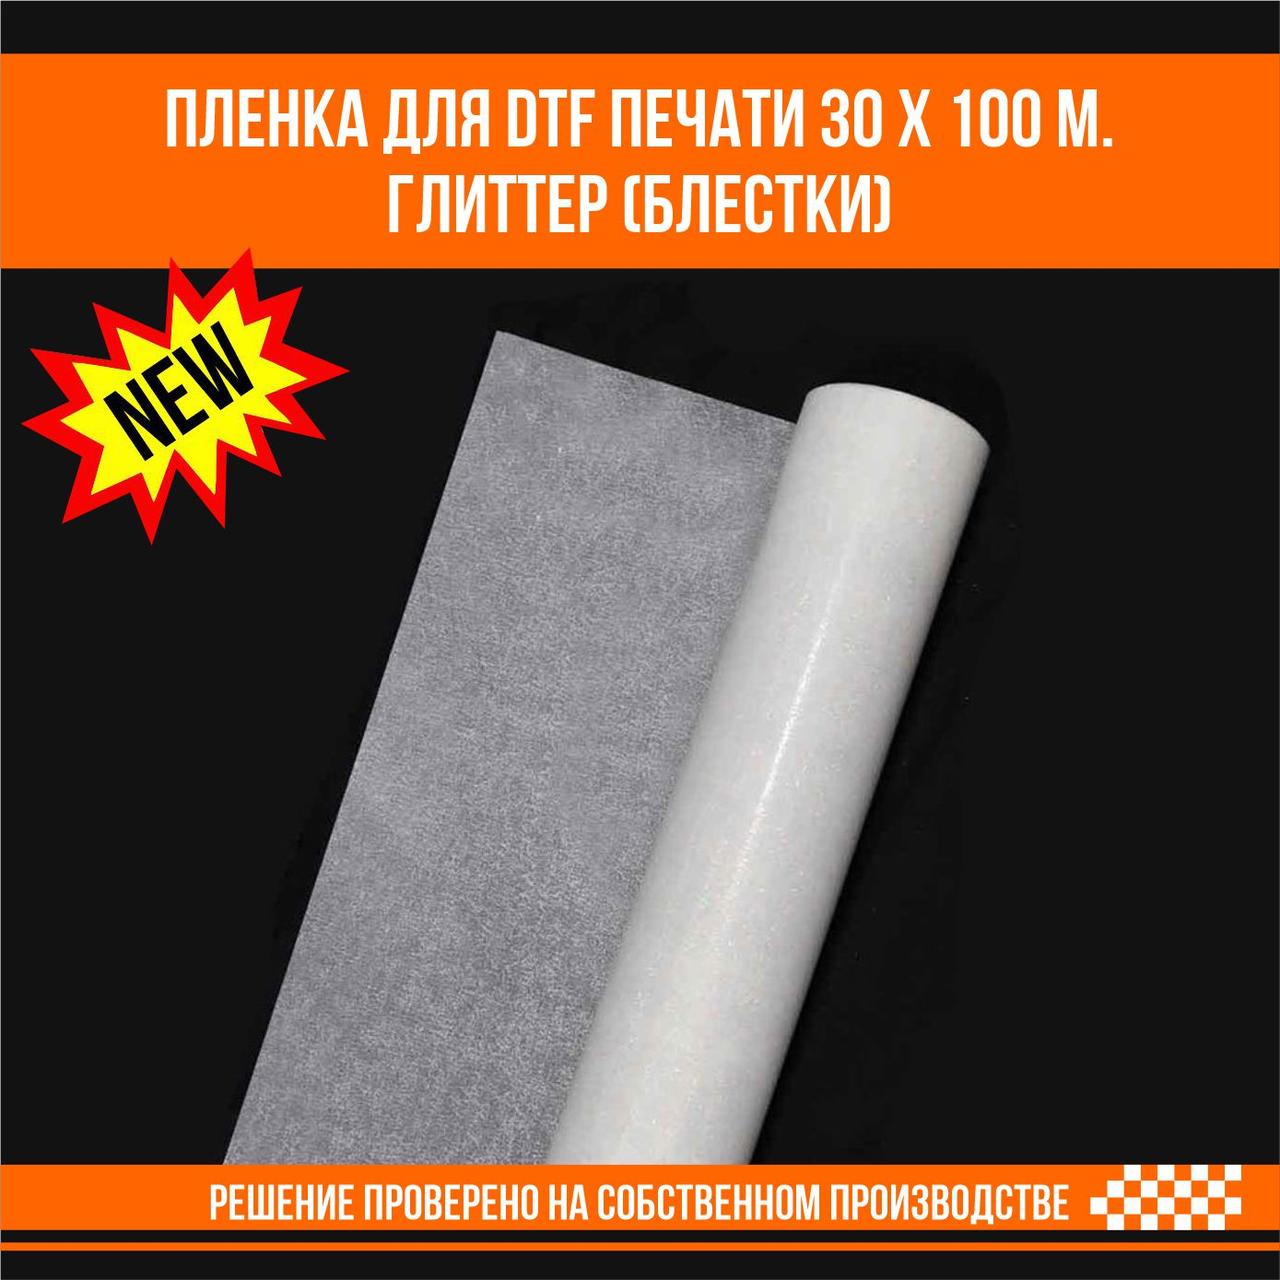 Пленка для DTF печати на ткани глиттер с блестками 30 х 100 м